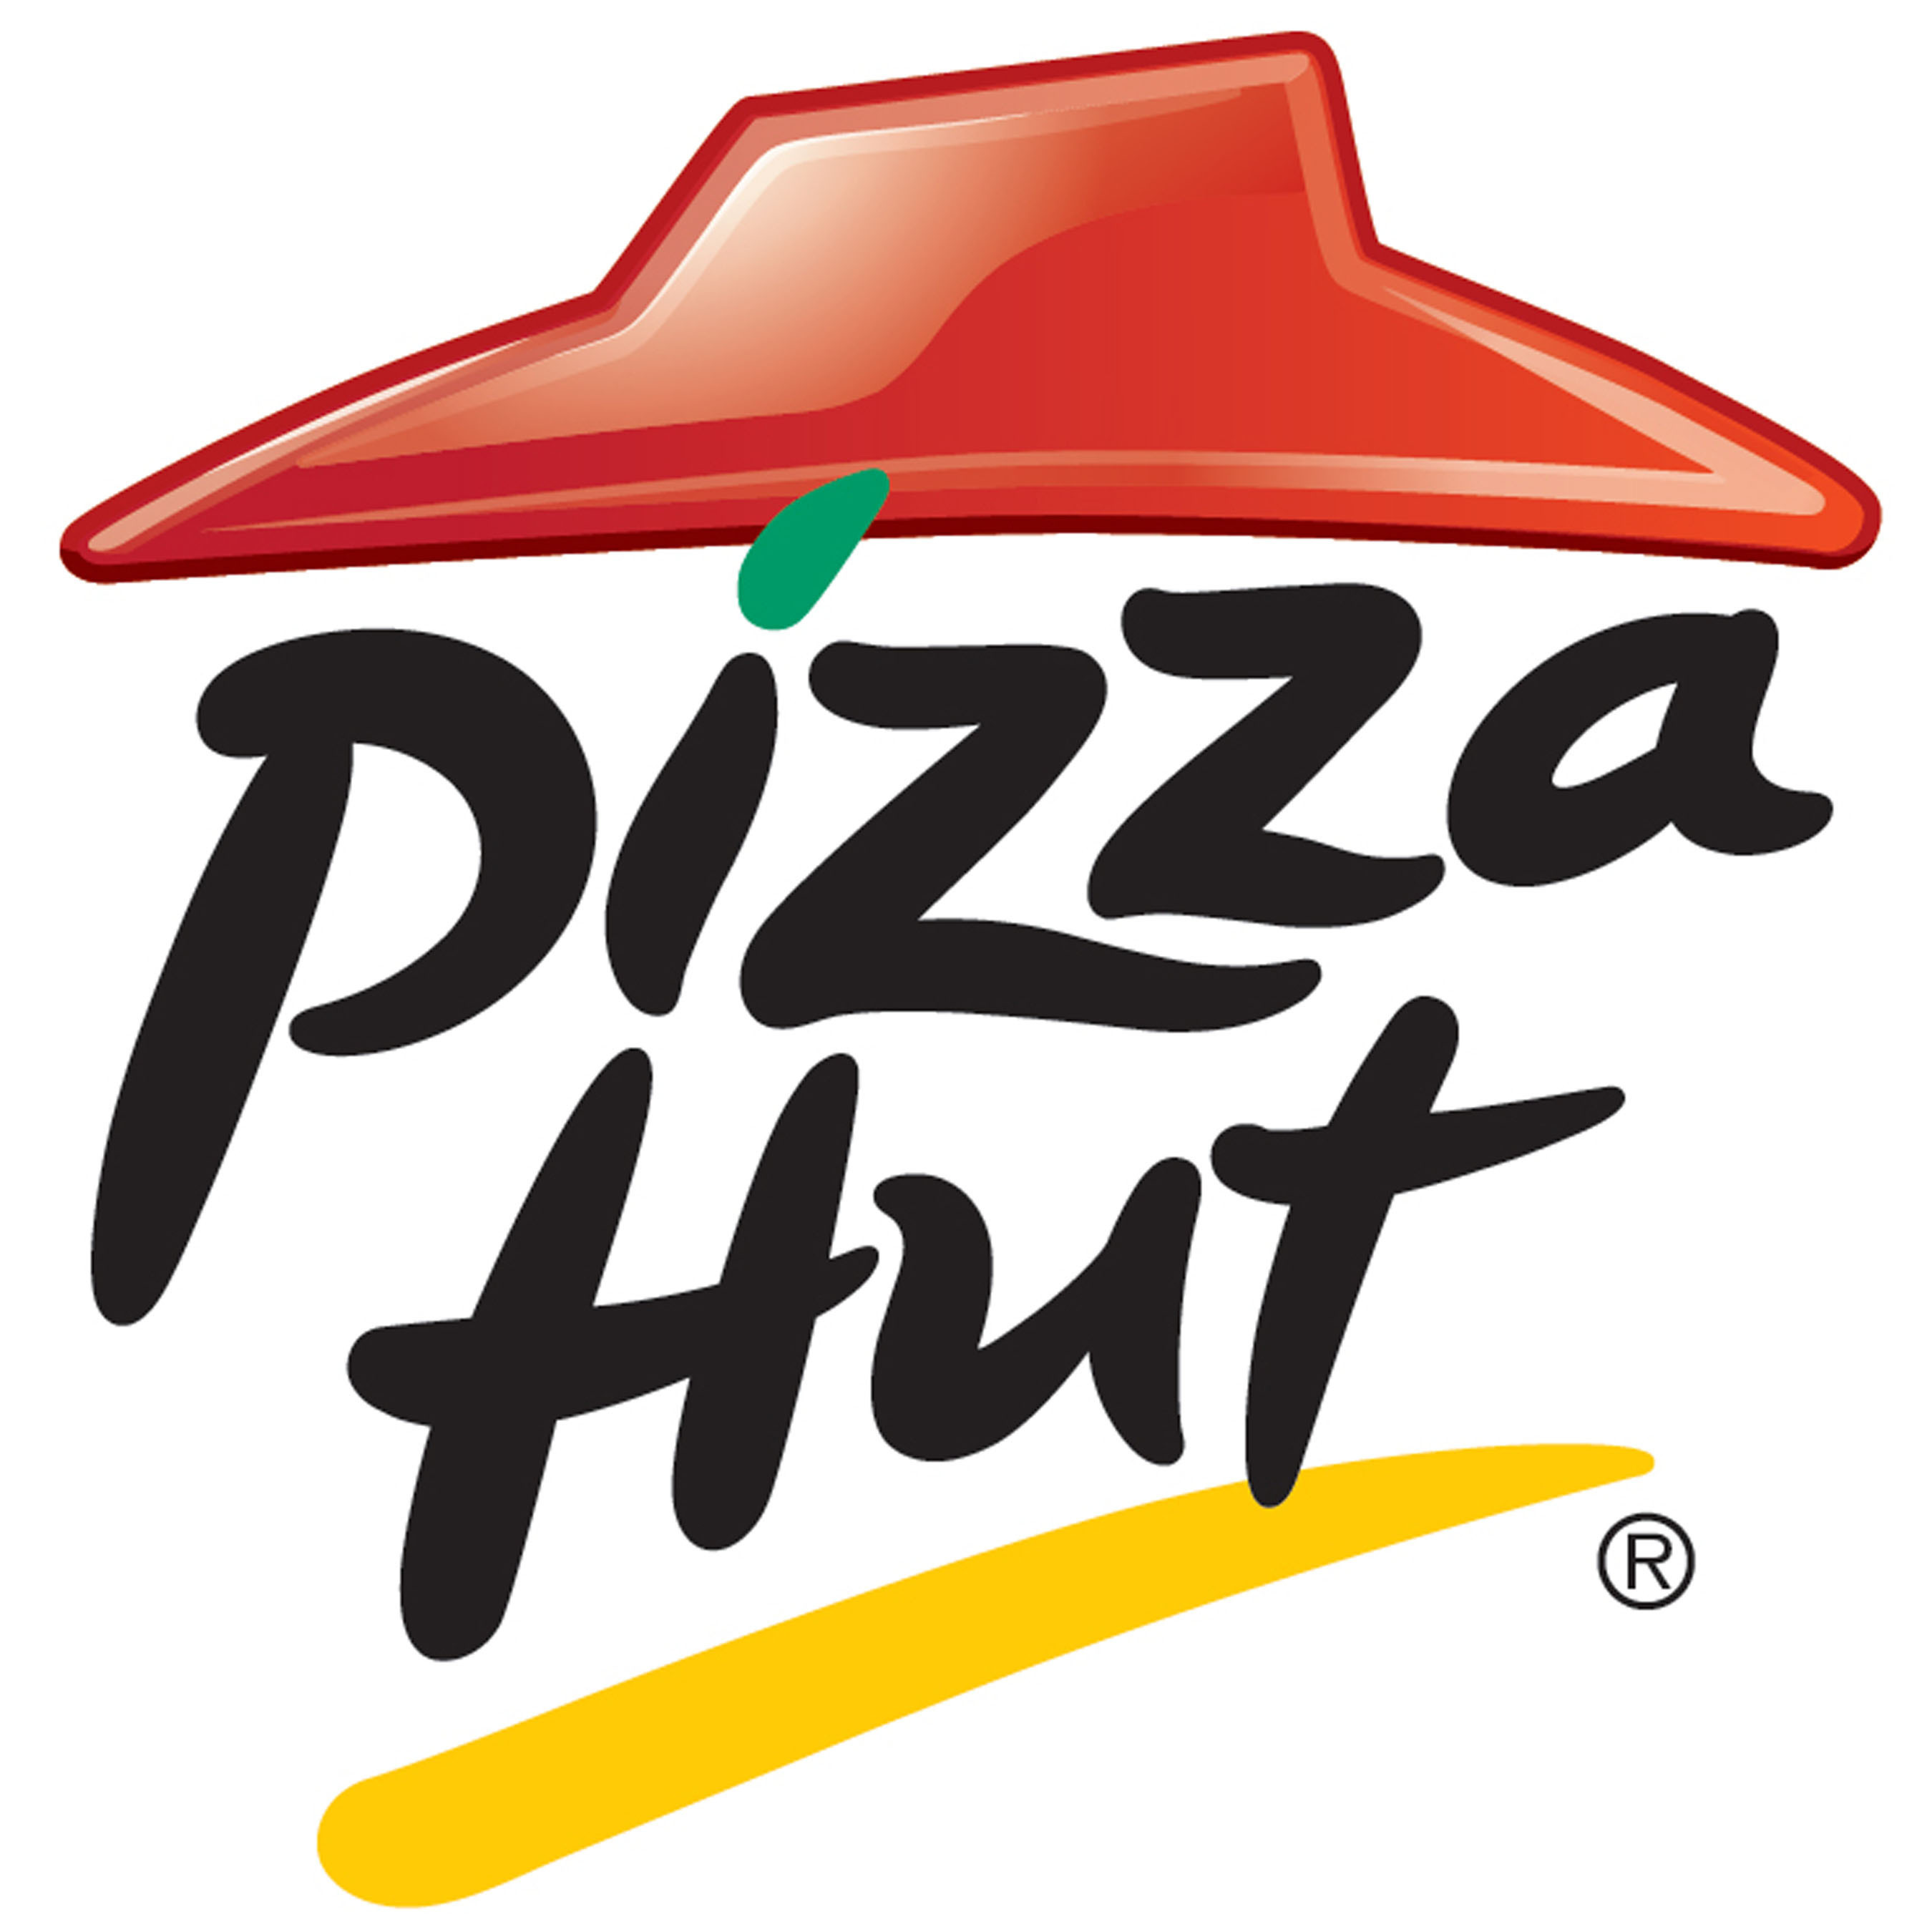 Pizza Hut logo. (PRNewsFoto/Pizza Hut)